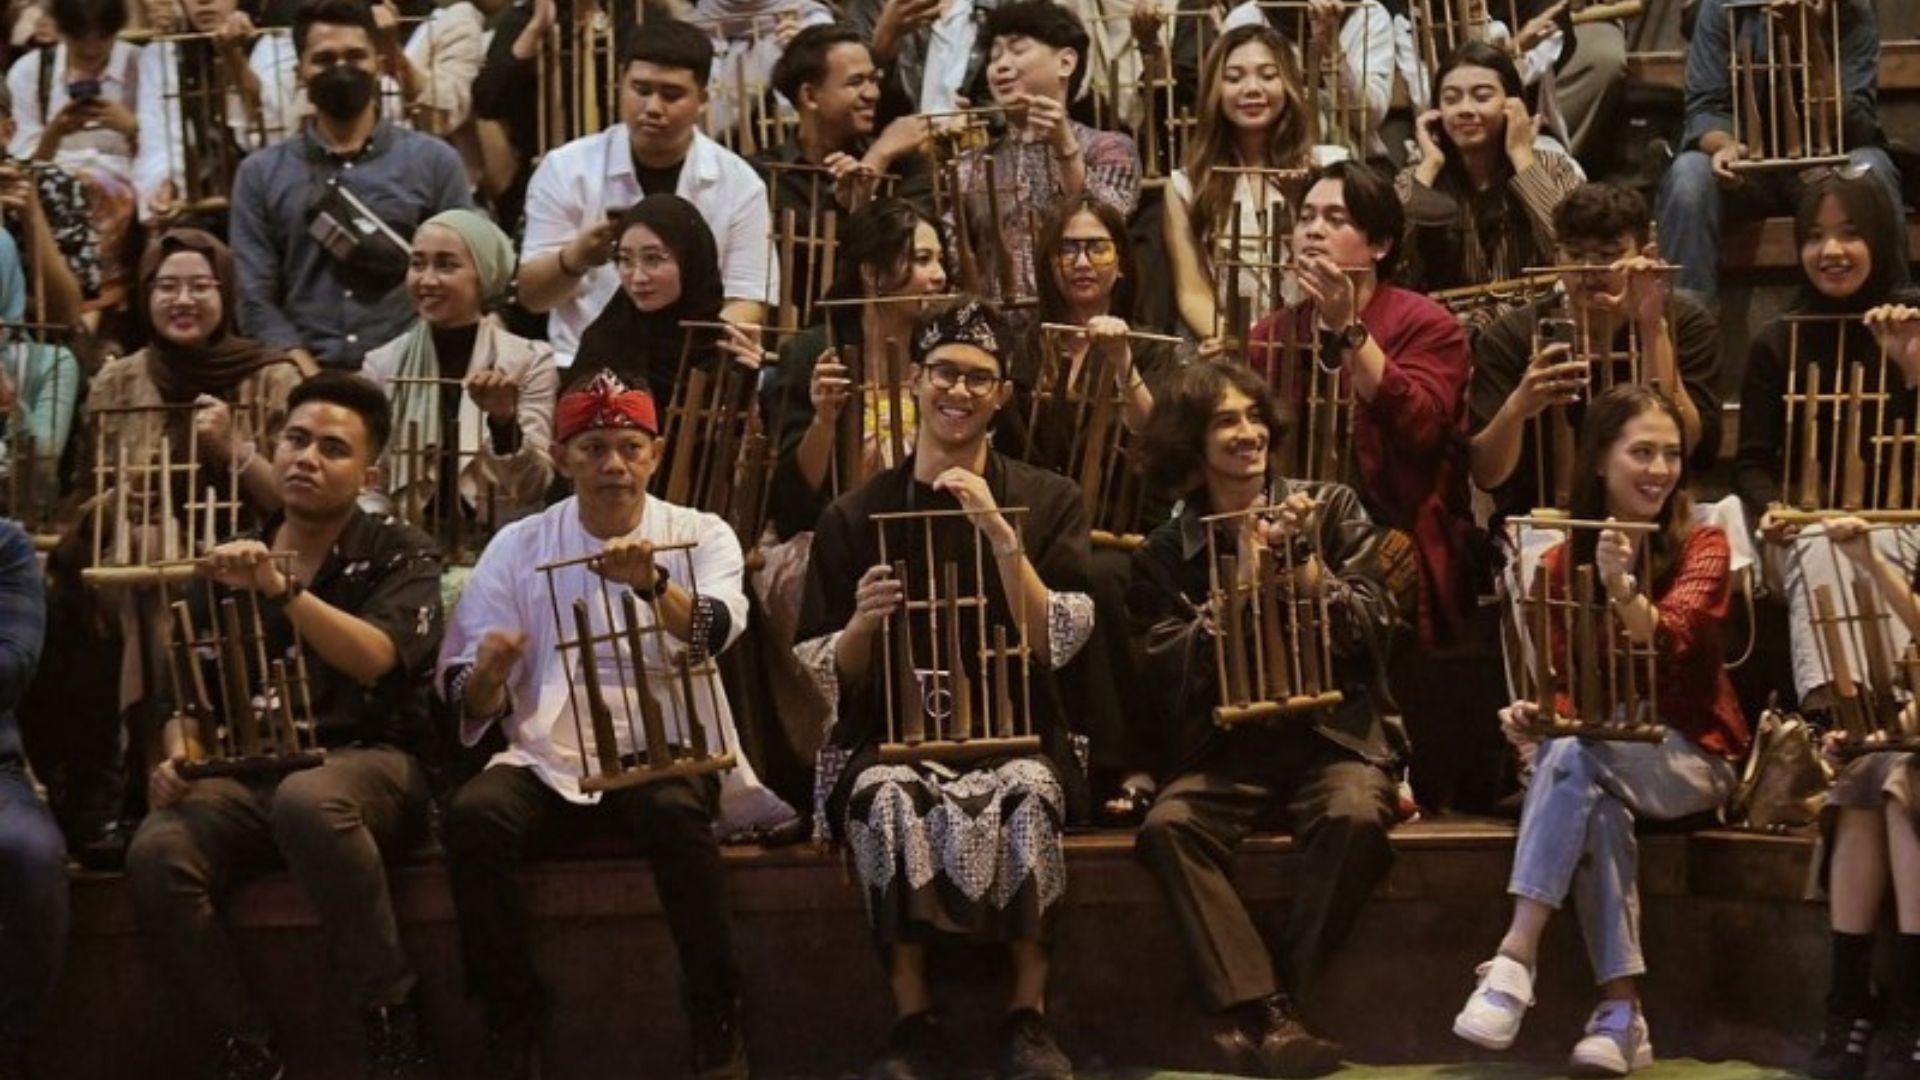 Penampilan komunitas angklung sebagai kesenian yang terdapat di bandung, Jawa Barat.